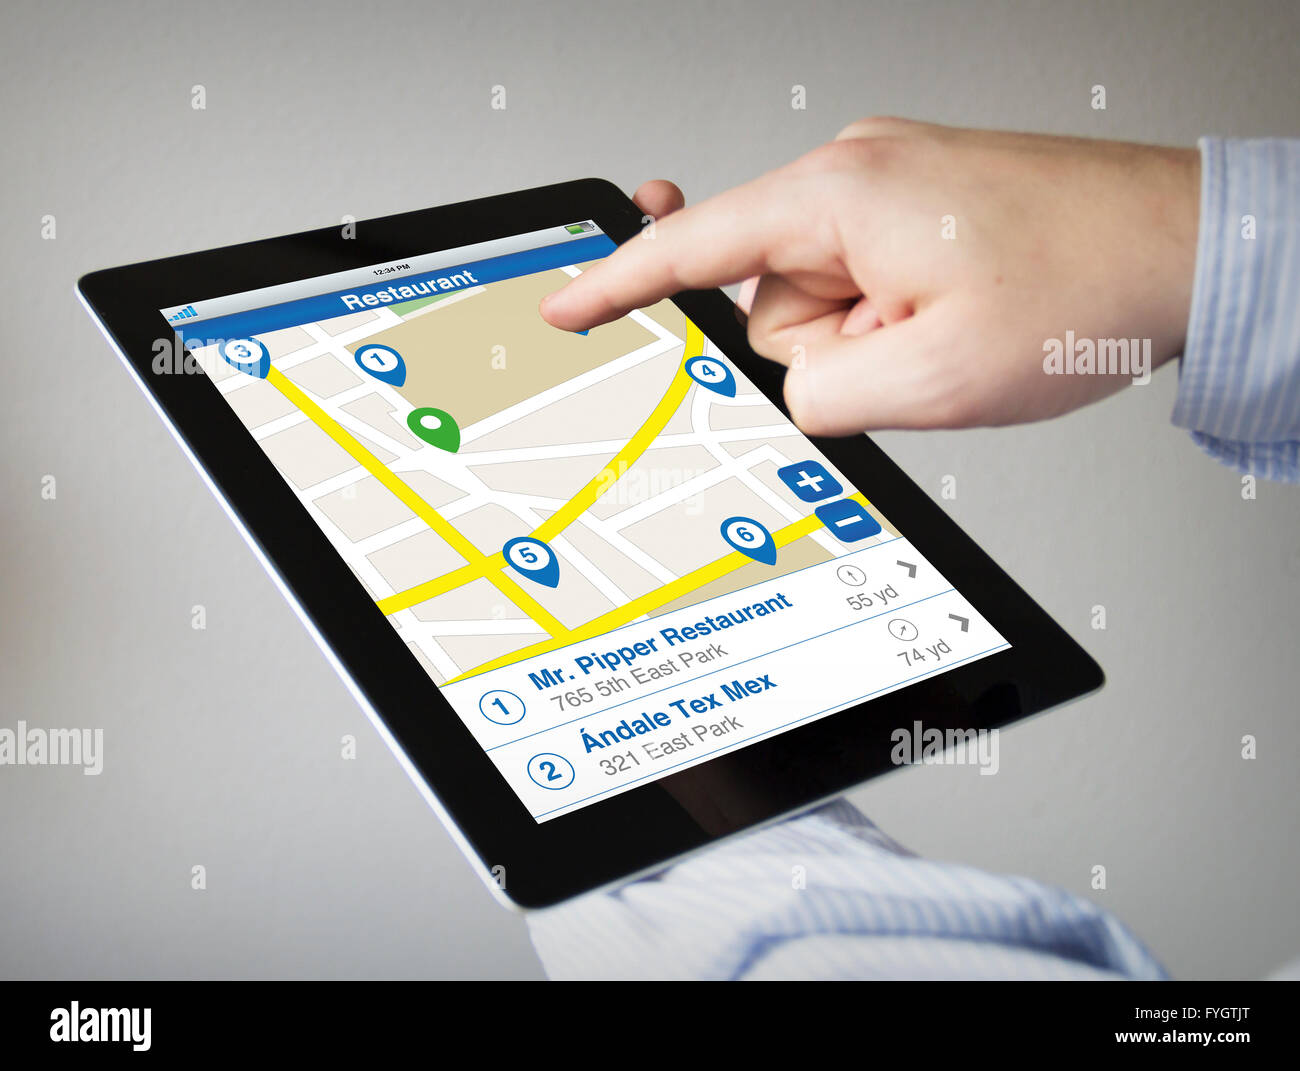 Nouvelles technologies concept : les mains à l'écran tactile Tablet avec restaurant recherchez. Tous les graphiques de l'écran sont constitués. Banque D'Images